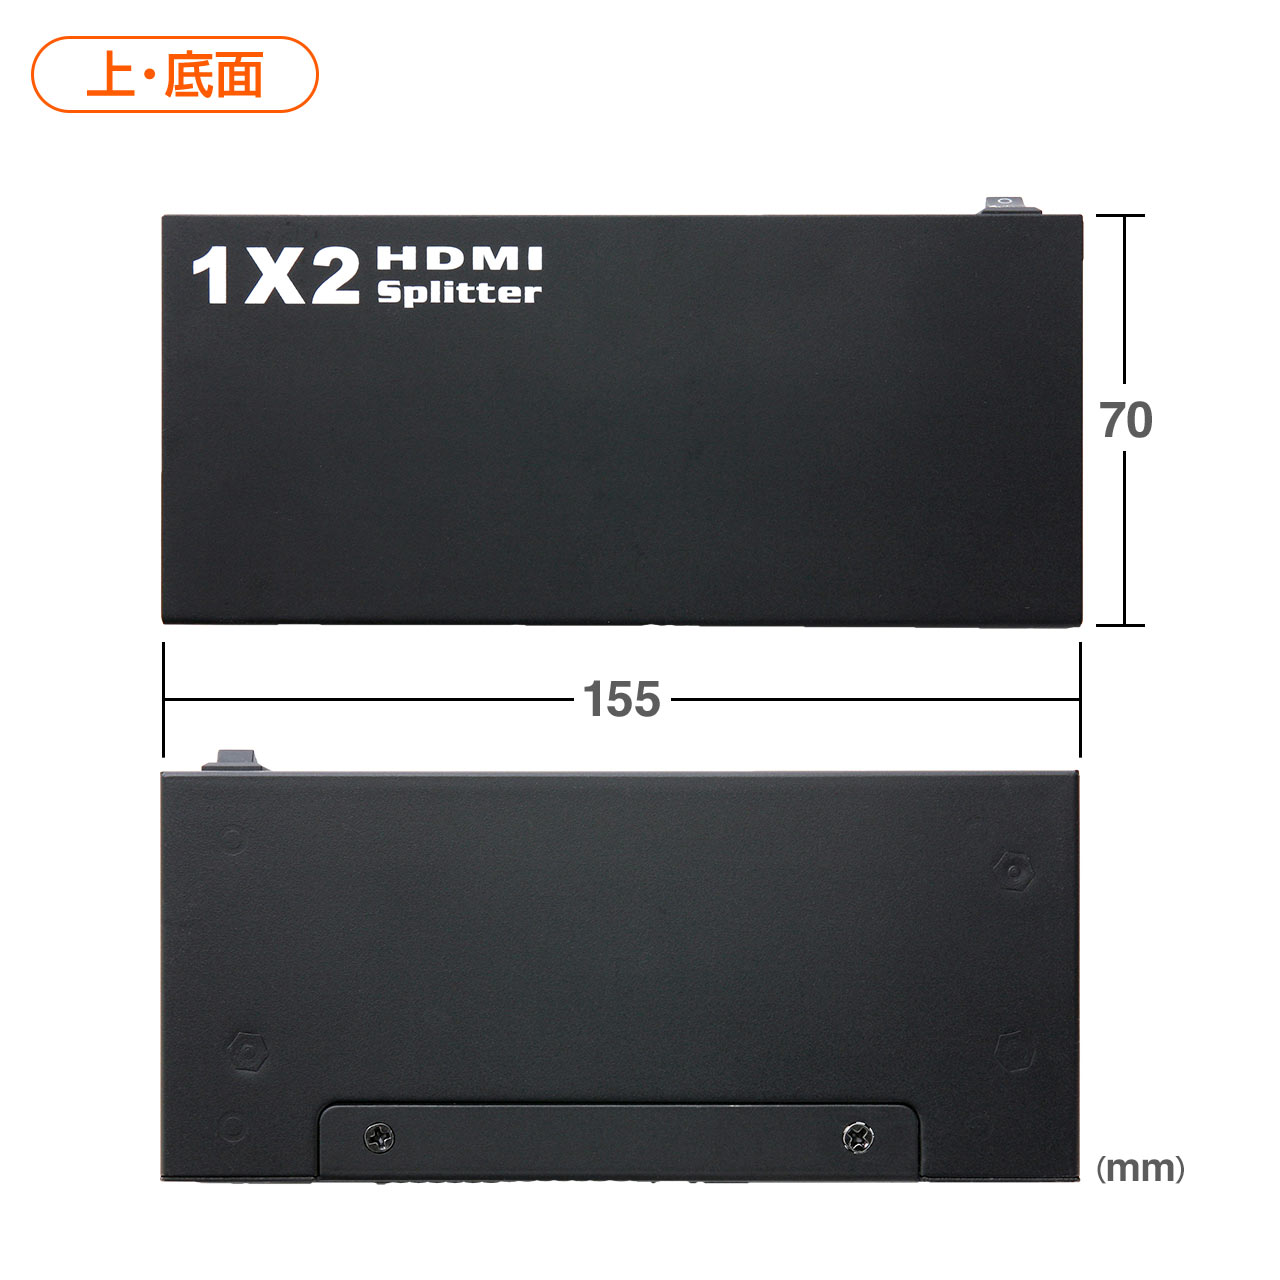 HDMIz@Xvb^[i1́~2ójy߁z 400-VGA003